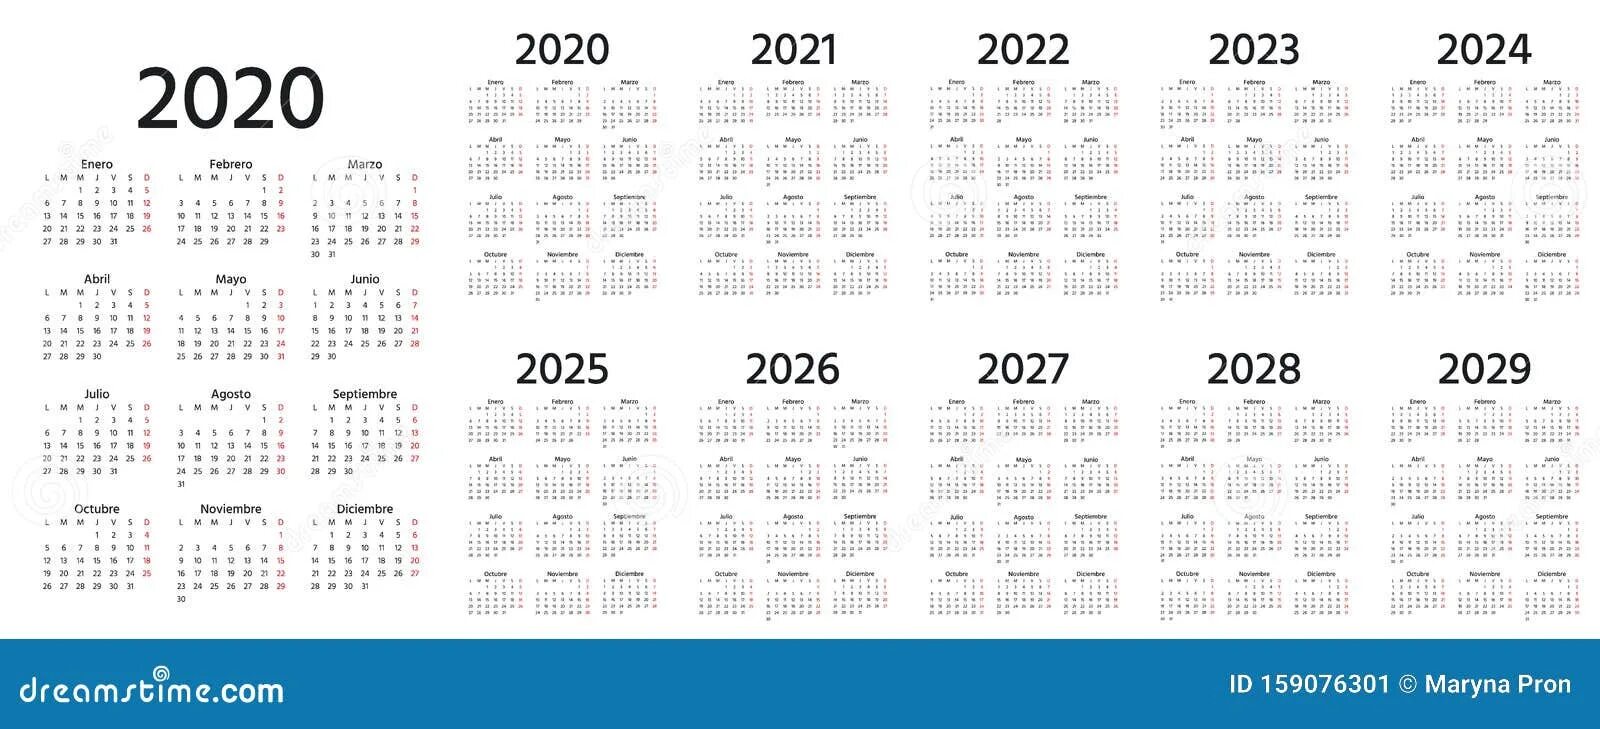 Календарь 2020 2021 2022 2023. Календарь с 2019 по 2024 год. Календарь за 2020 2021 2022. Календарь годов 2020-2030. Календарь 2027г